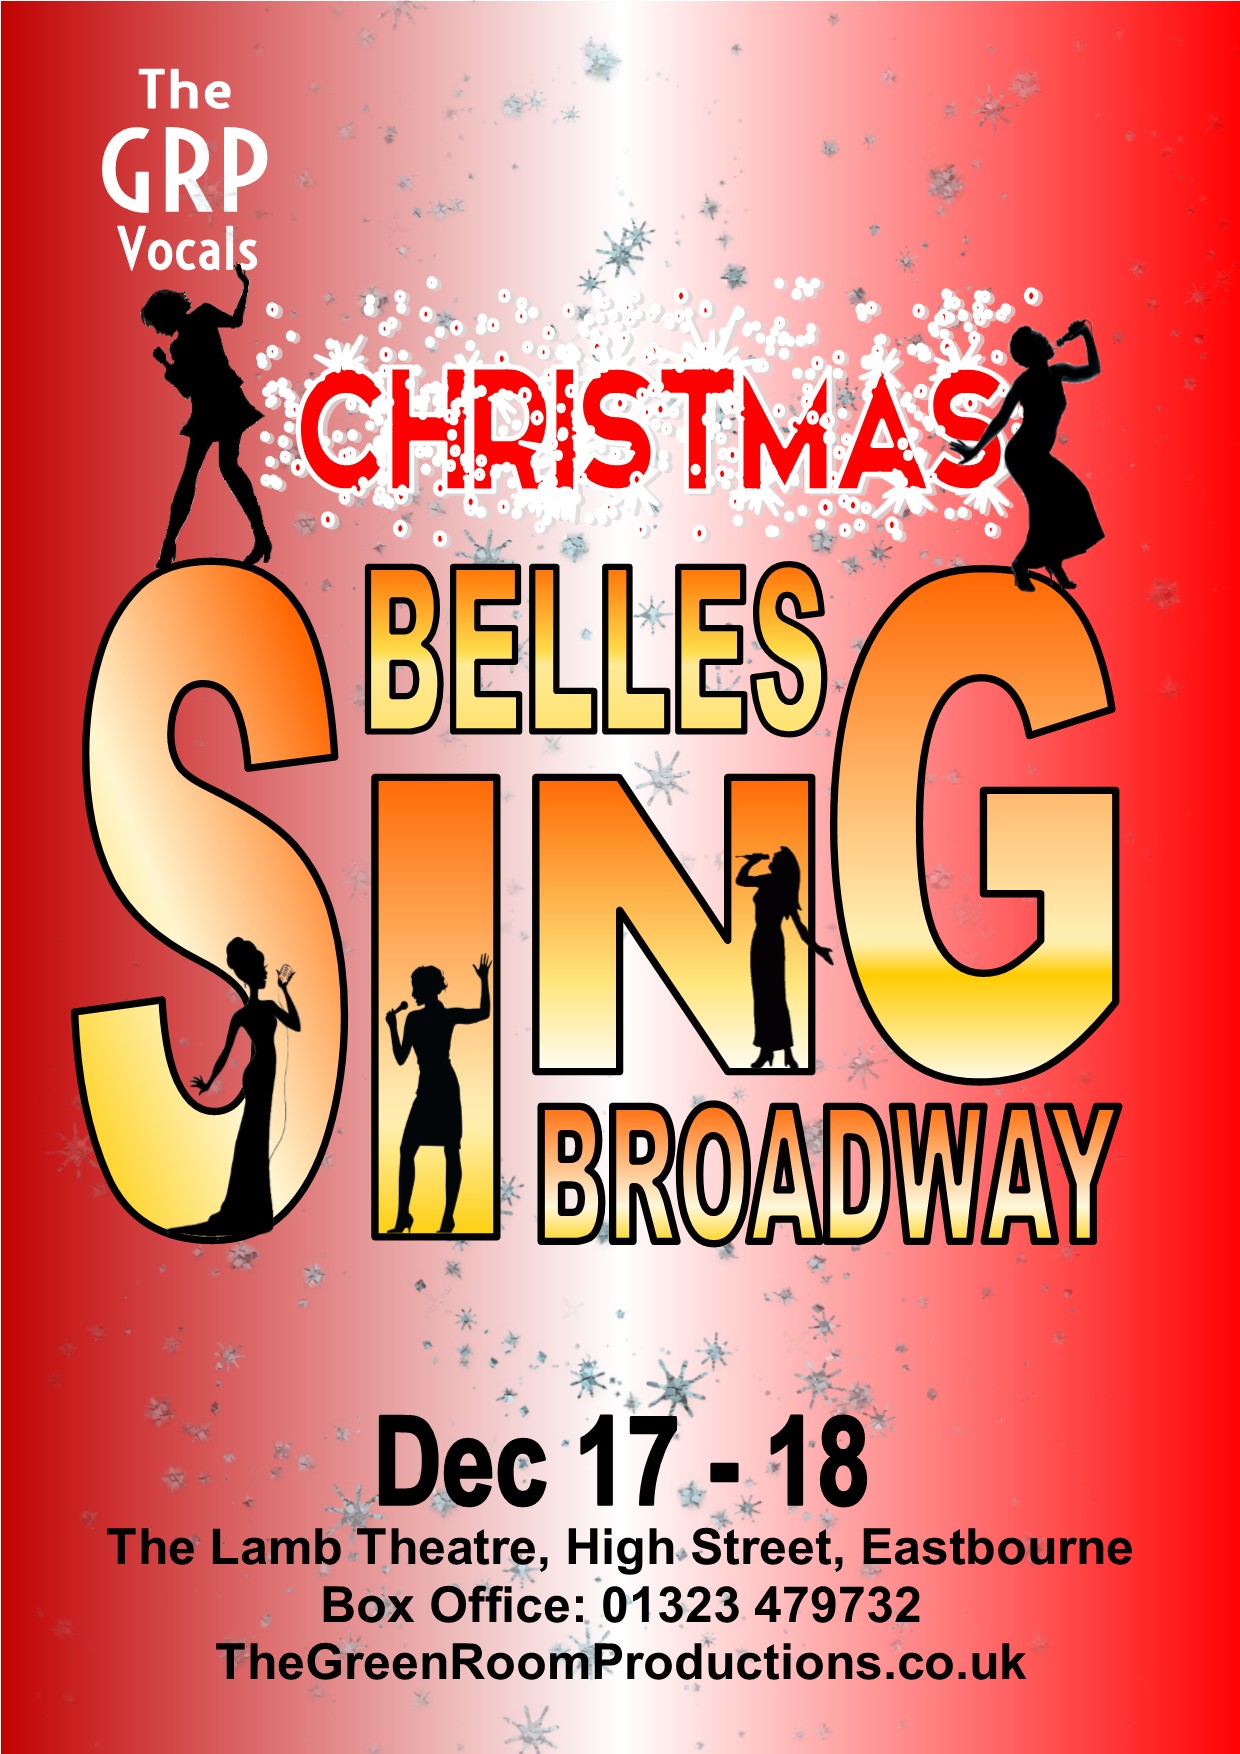 Christmas Belles Sing Broadway